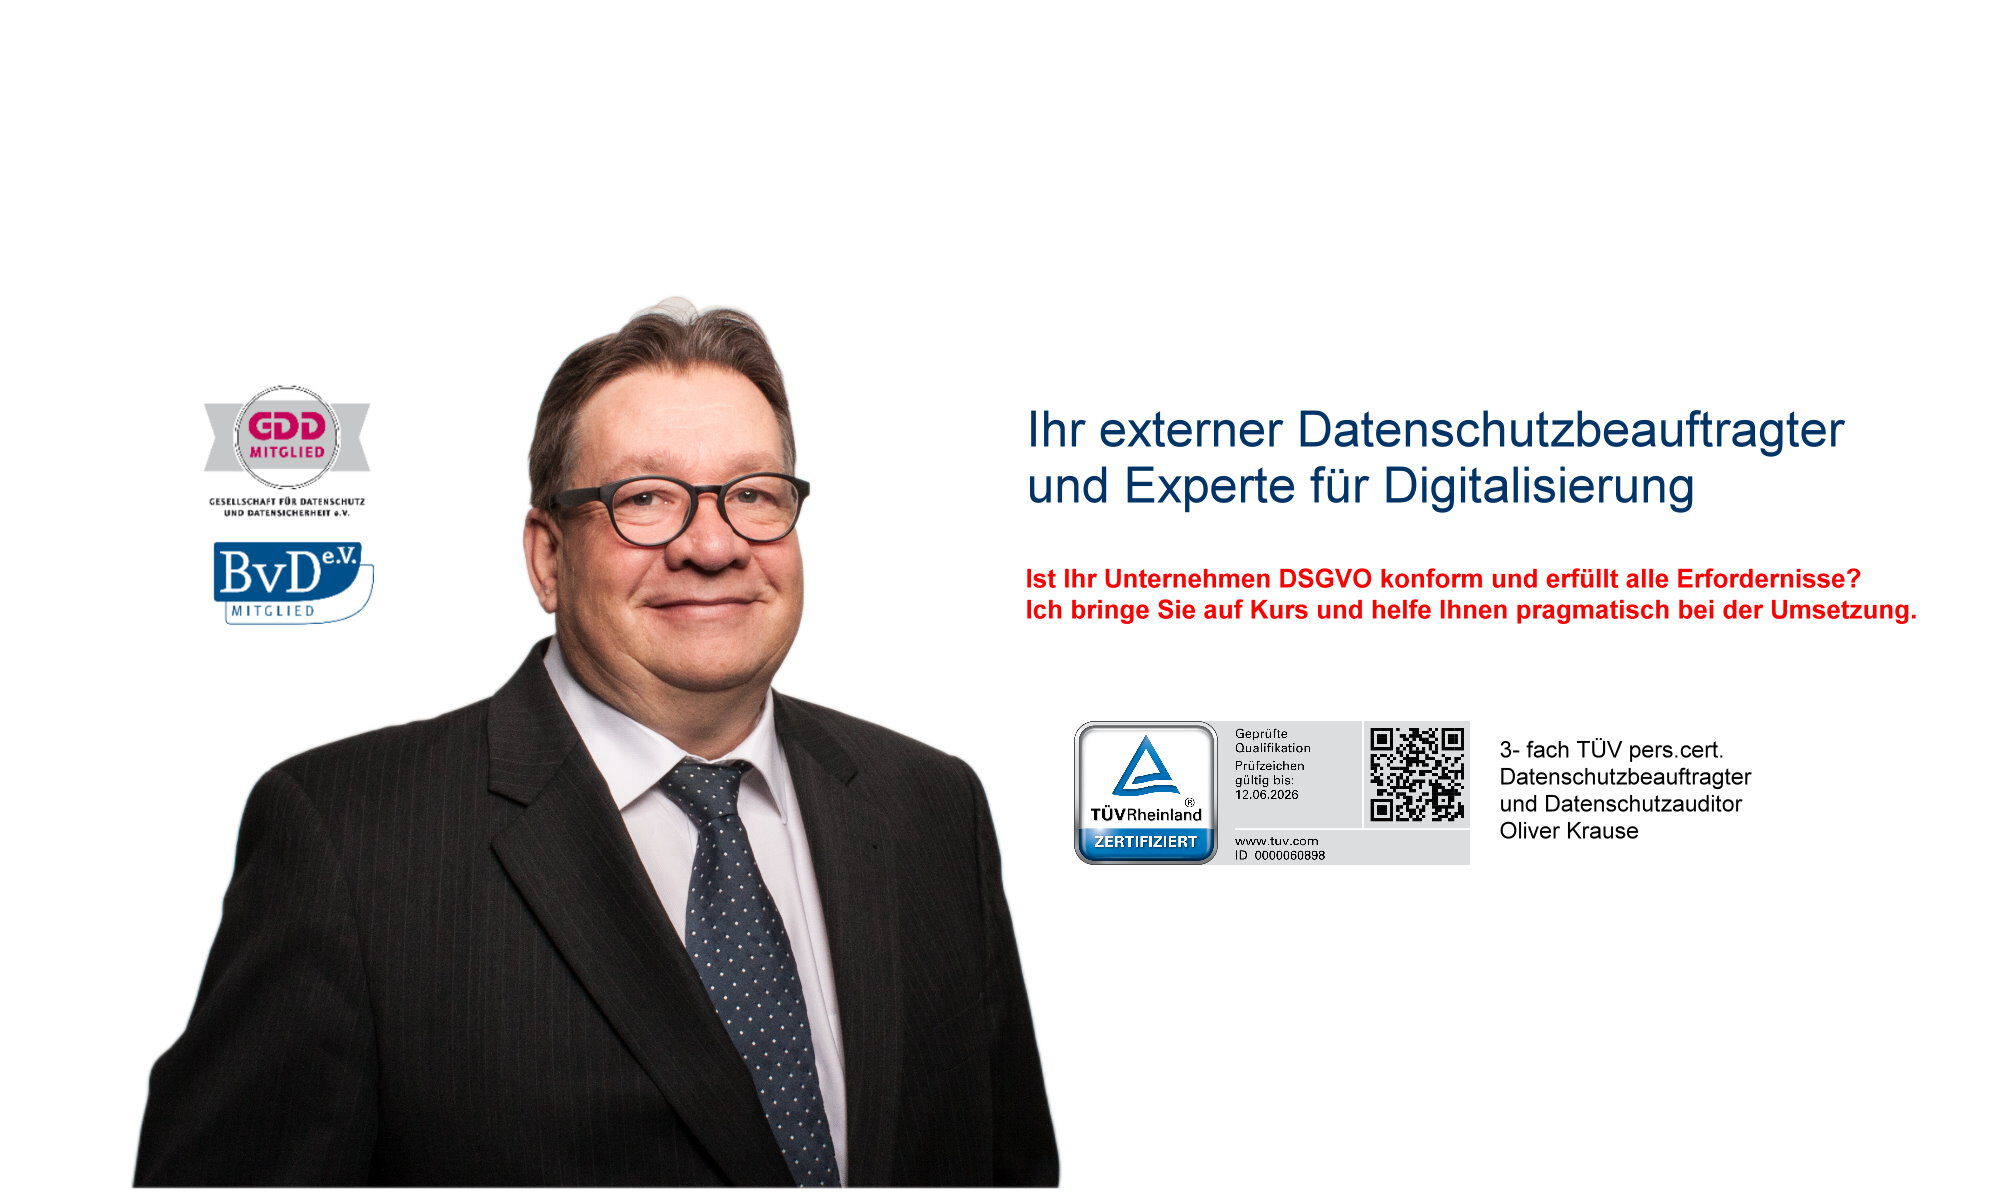 externer Datenschutzbeauftragter und Datenschutzauditor Oliver Krause